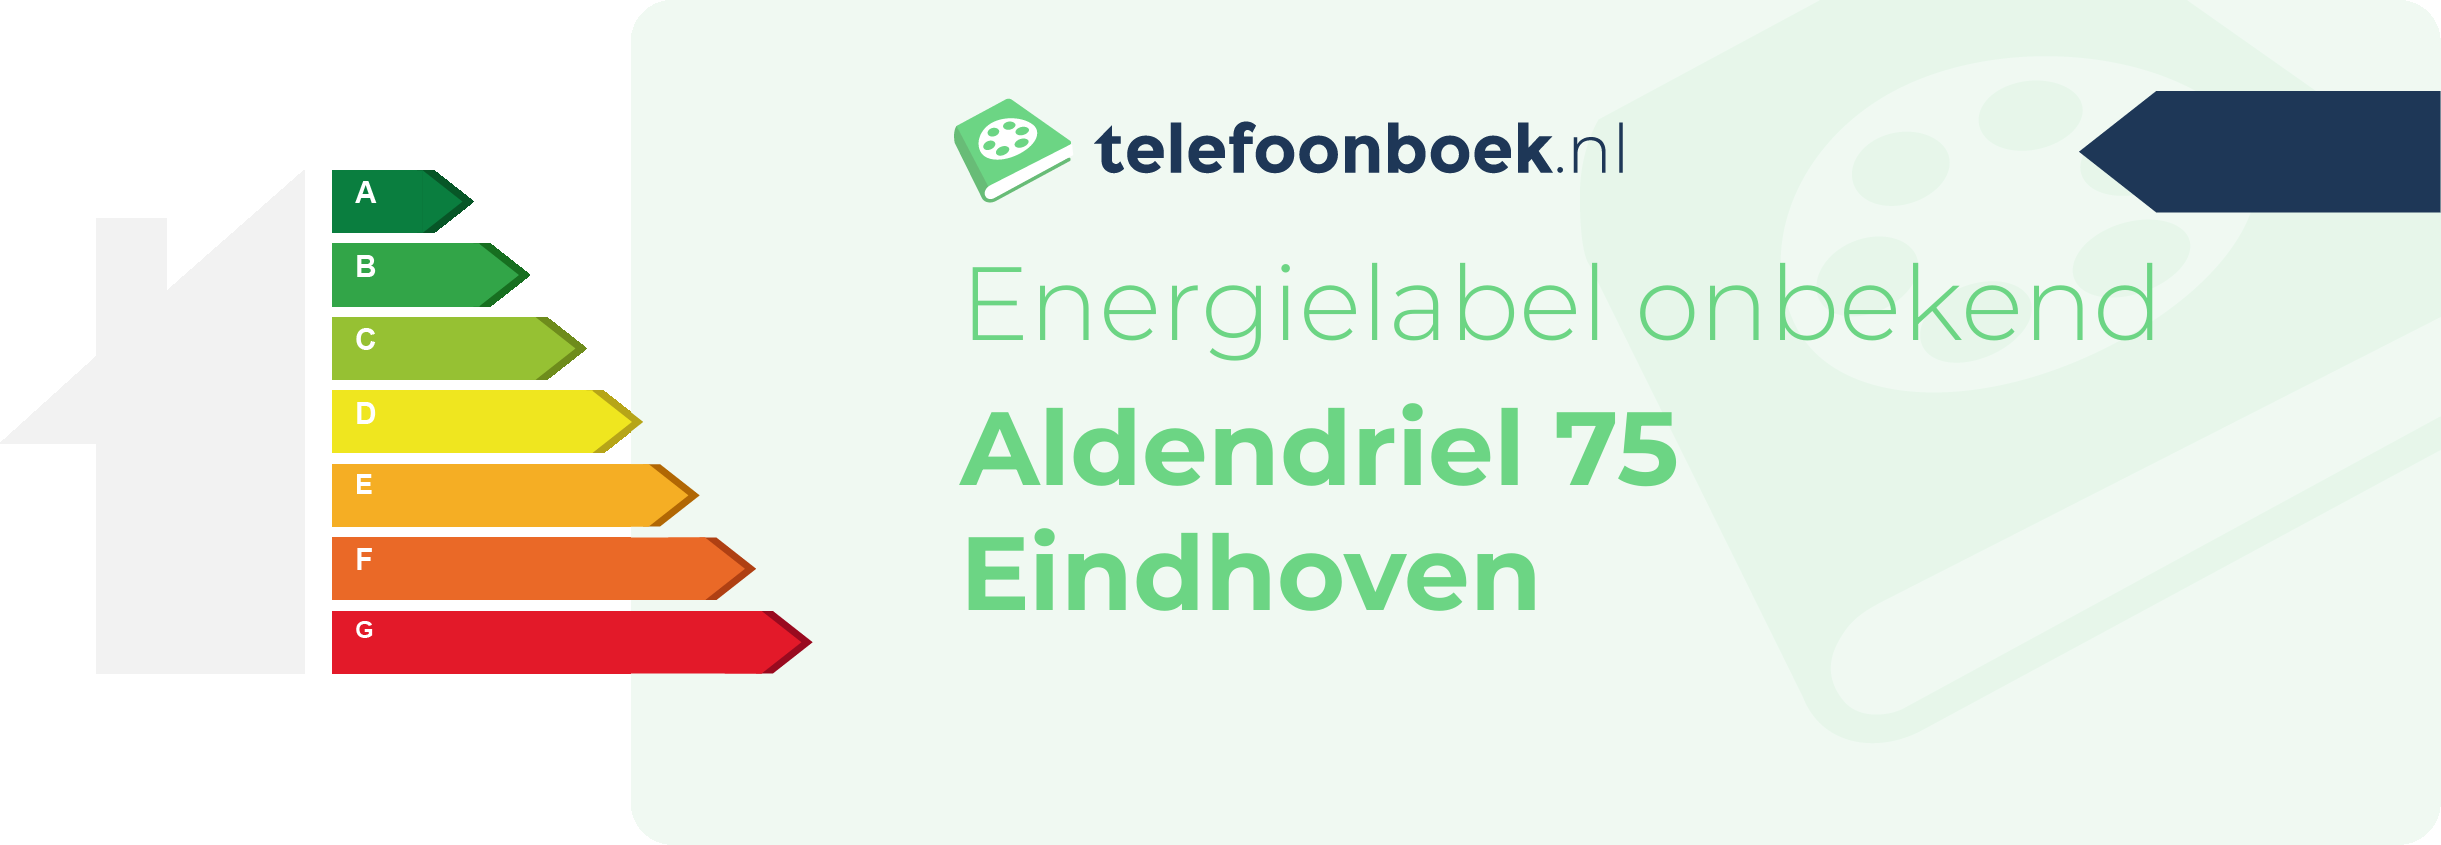 Energielabel Aldendriel 75 Eindhoven